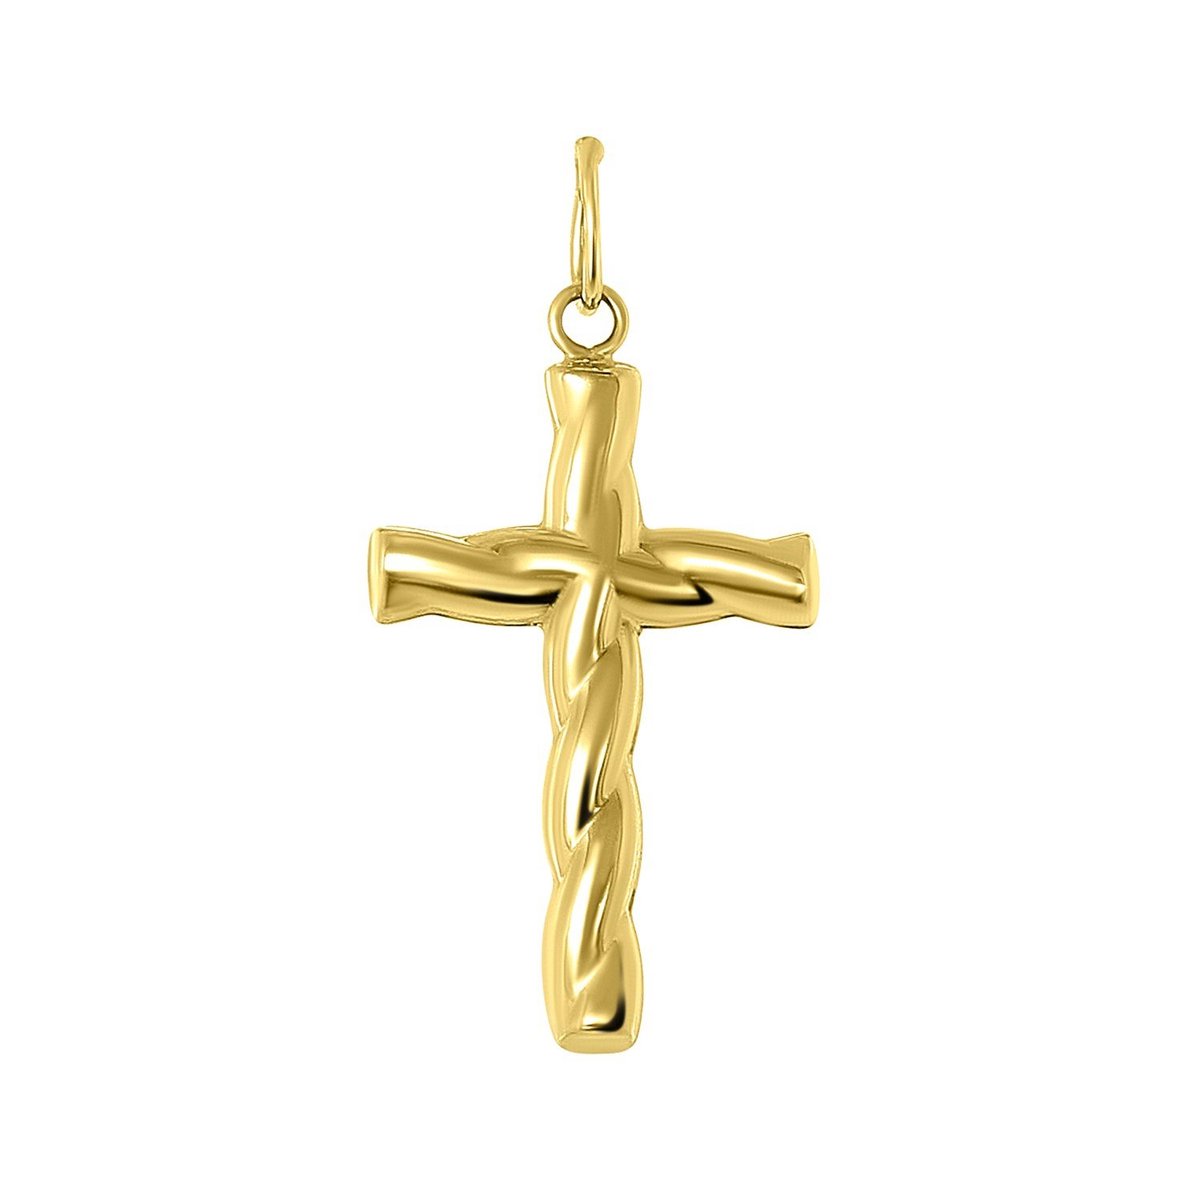 Pendentif croix avec Jésus En or jaune 585-14 carats  Unisexe.